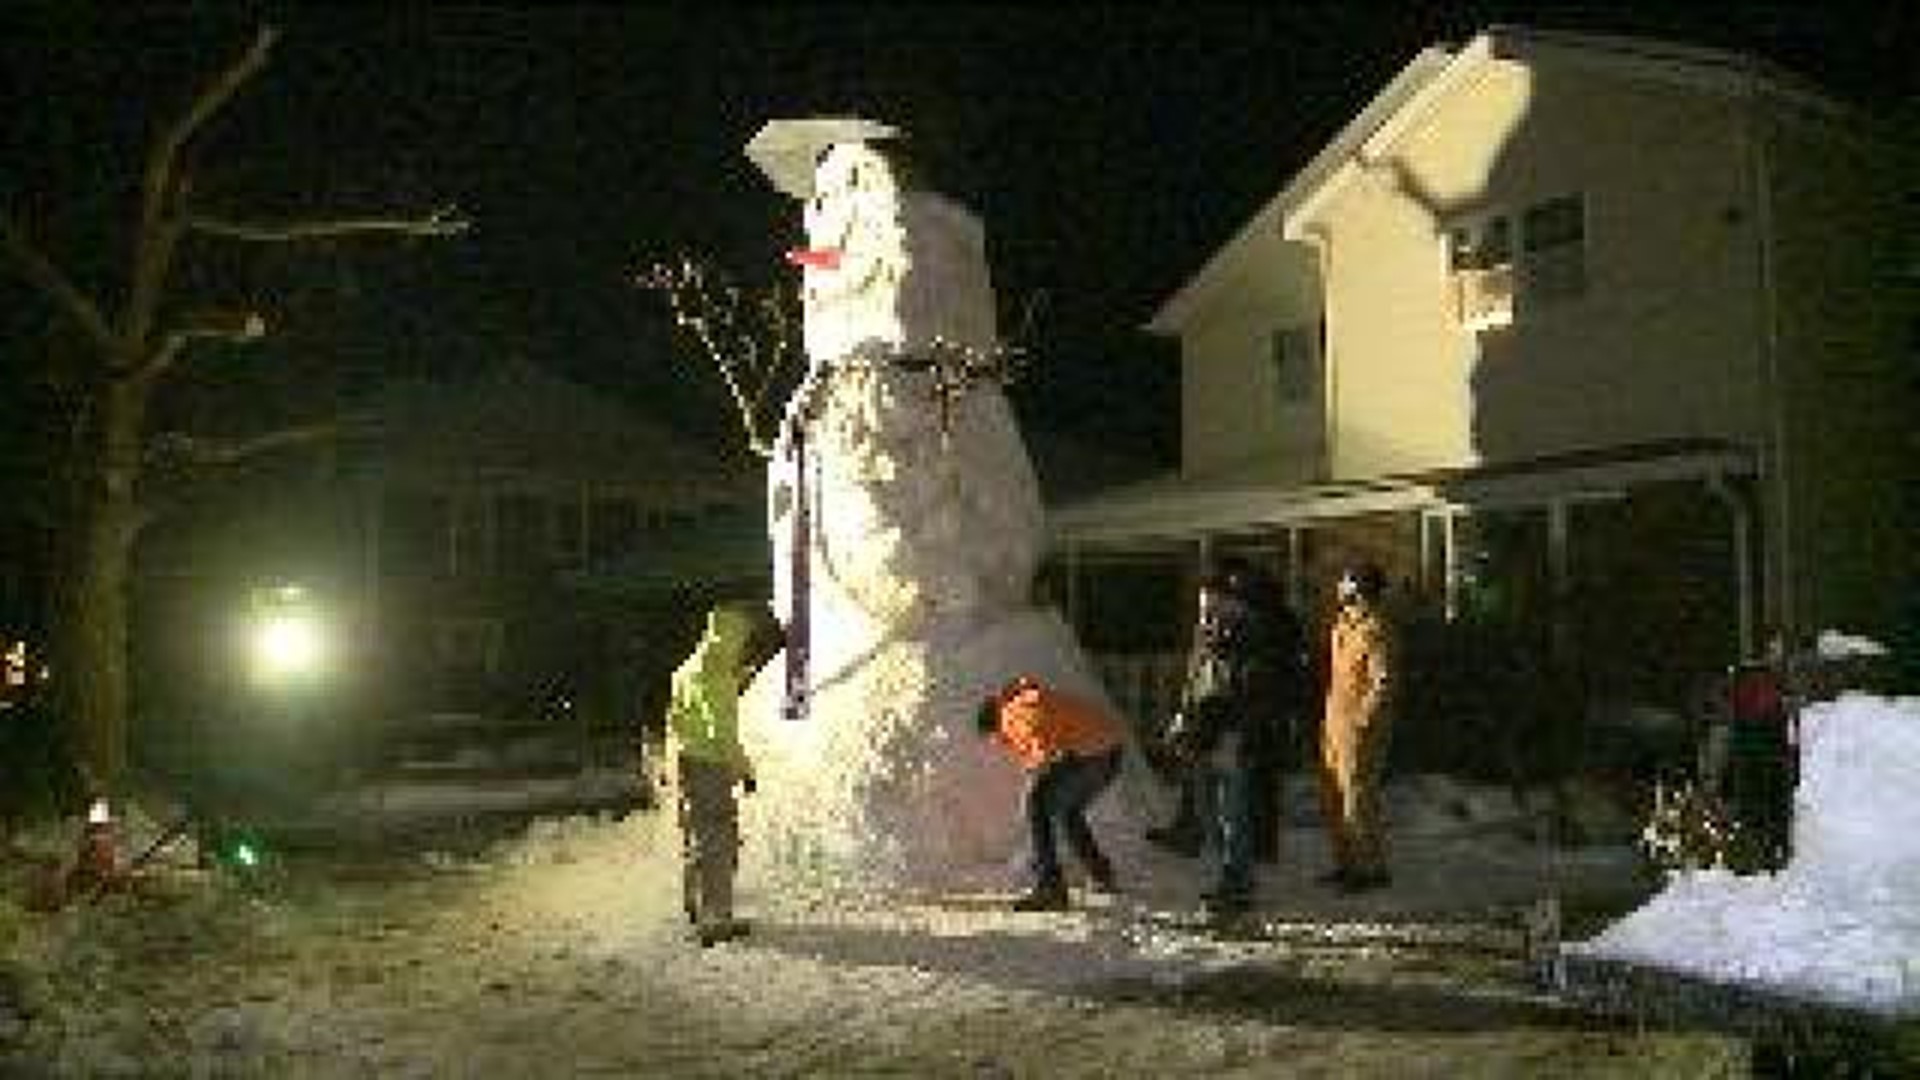 Teen Builds 20-Foot High Snowman